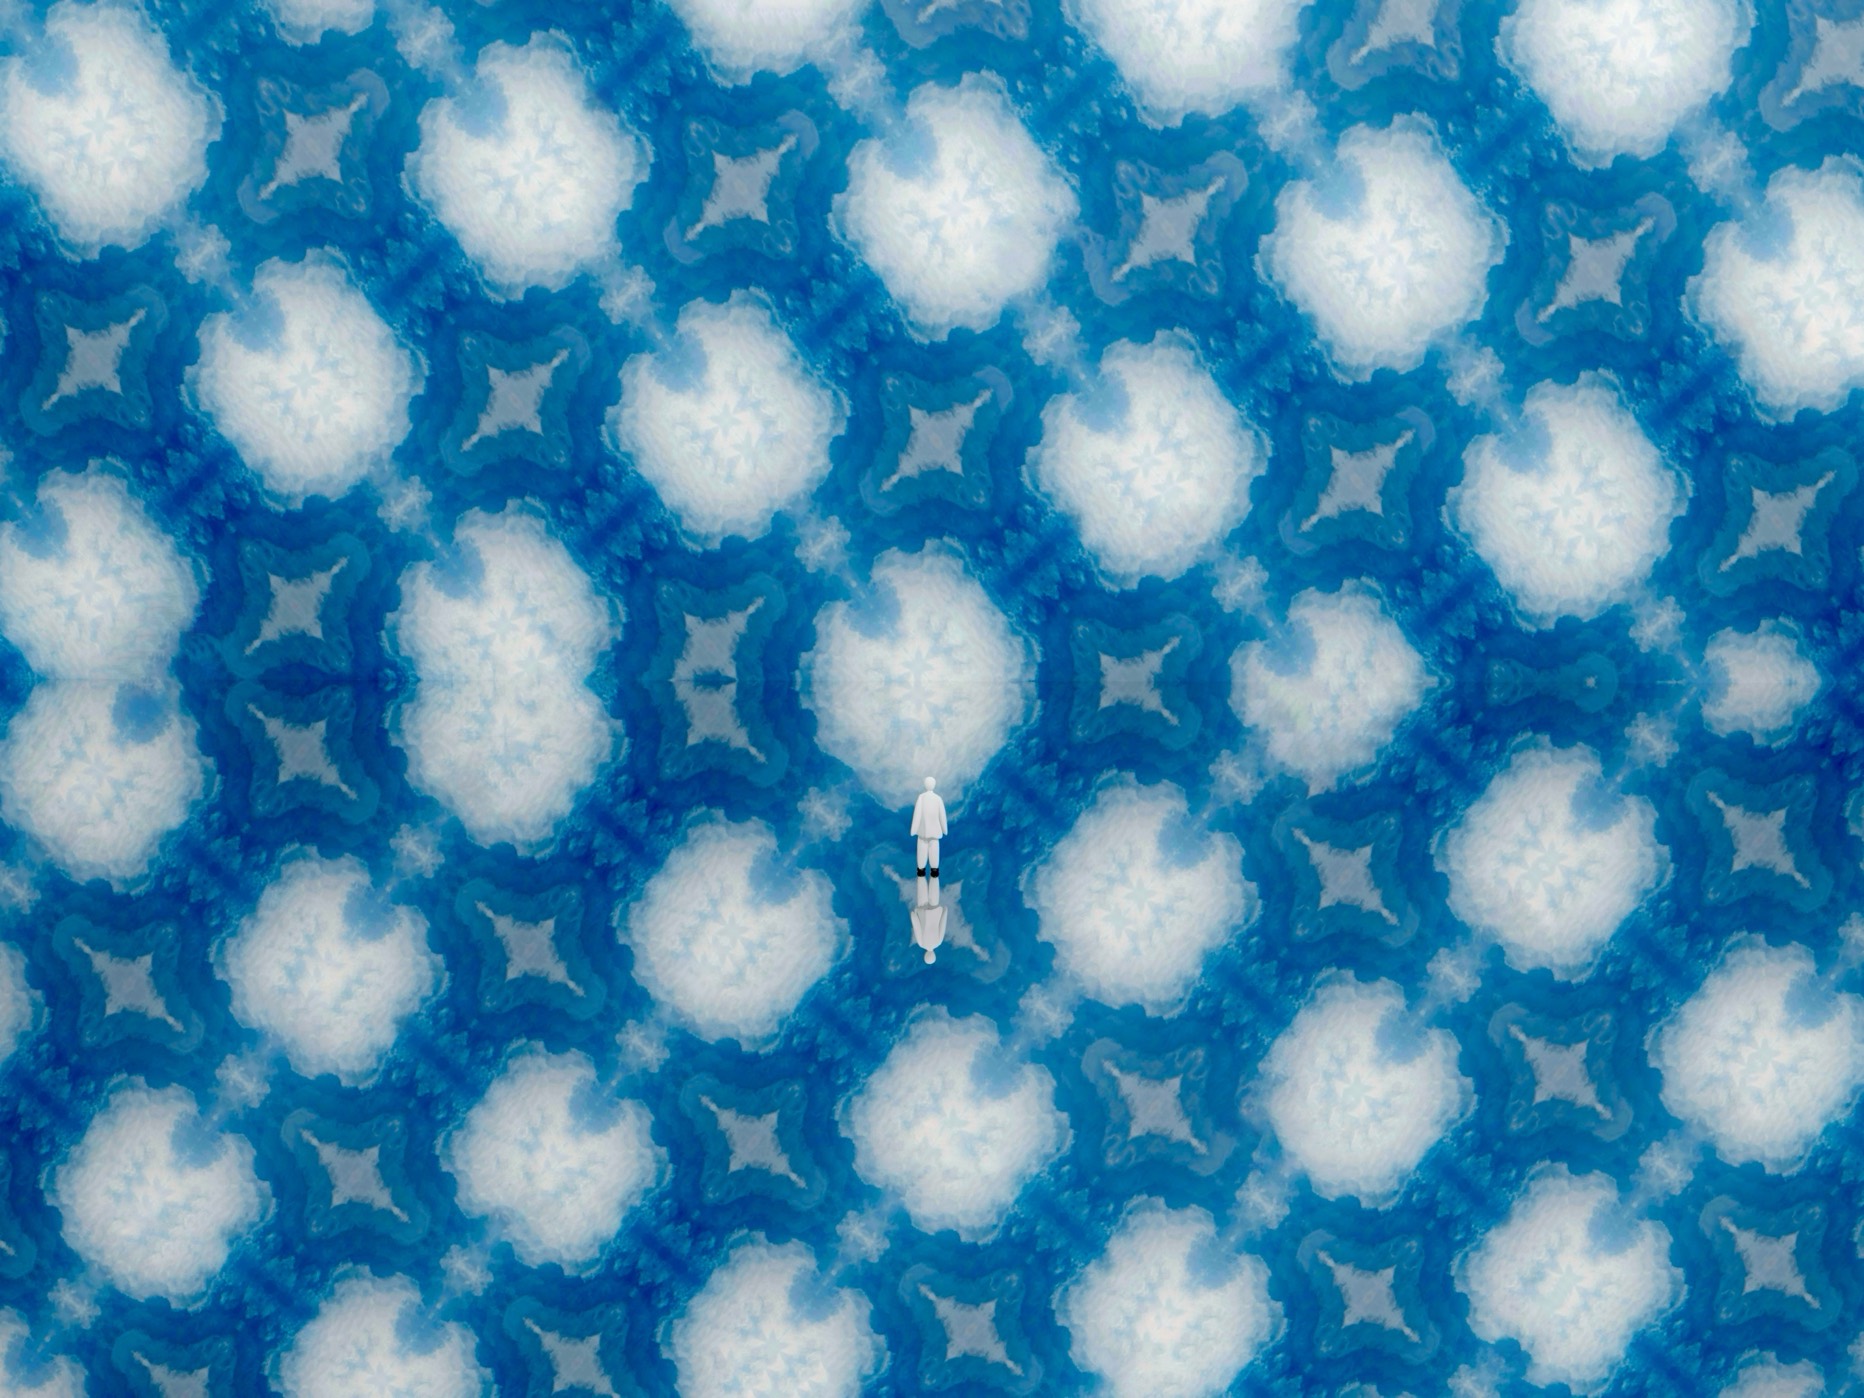 Atsushigraphのグラフィックアート「Cloud Pocket」の画像です。綿雲のようなポケットが、青空を連想させる背景に連なっています。その景色を、小さな人が真ん中で見つめている構図が3DCGによって描かれています。2024年作。